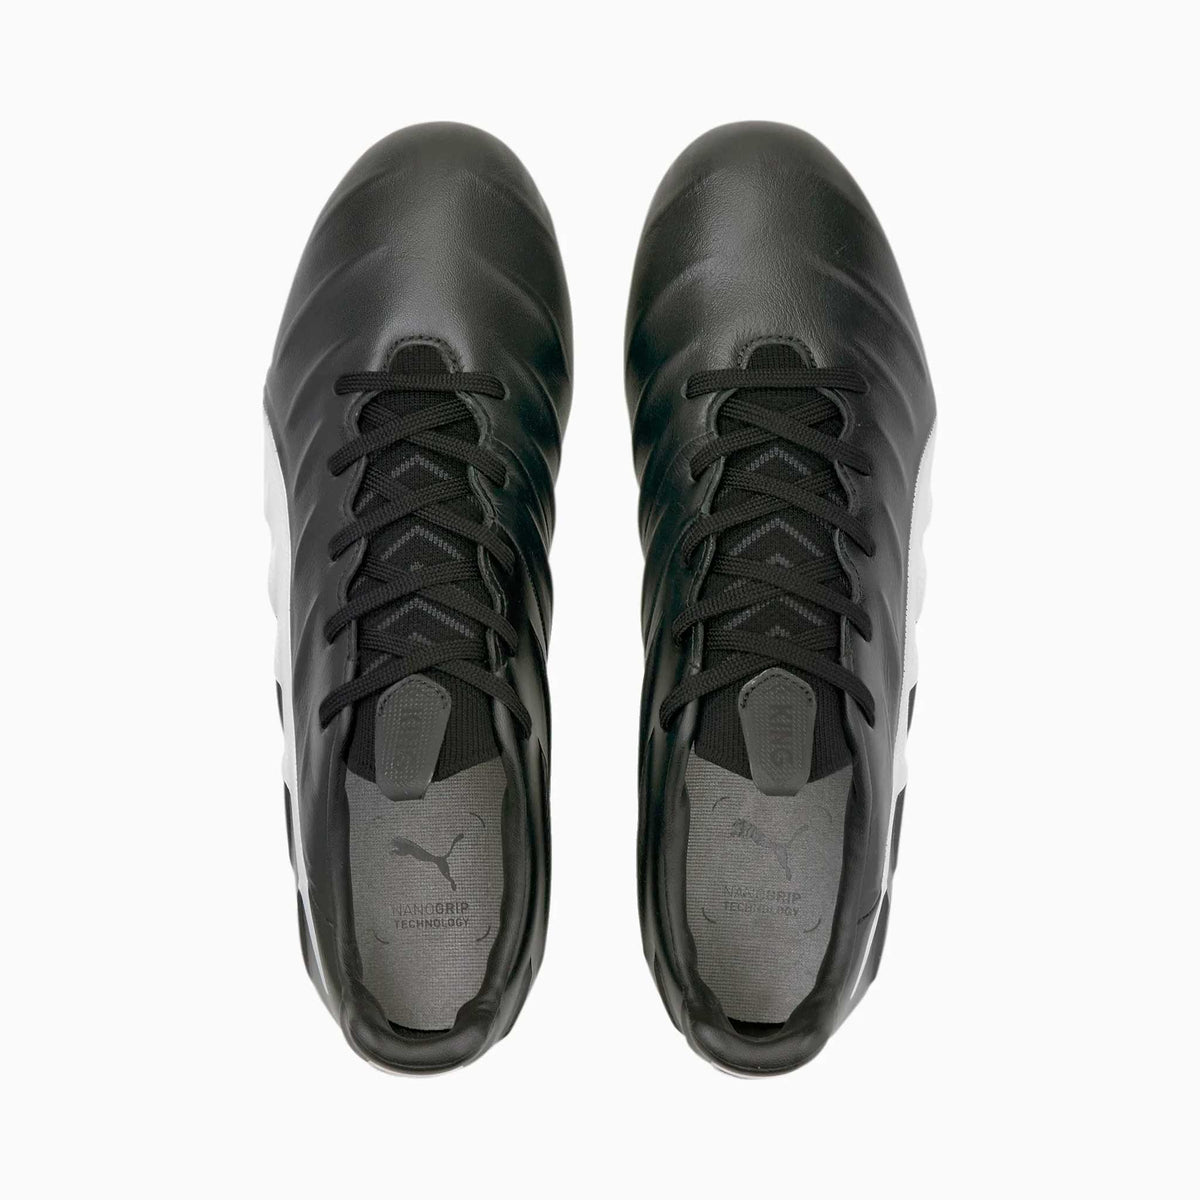 Puma King Platinum 21 FG chaussures de soccer - Puma Black / Puma White - vue de haut